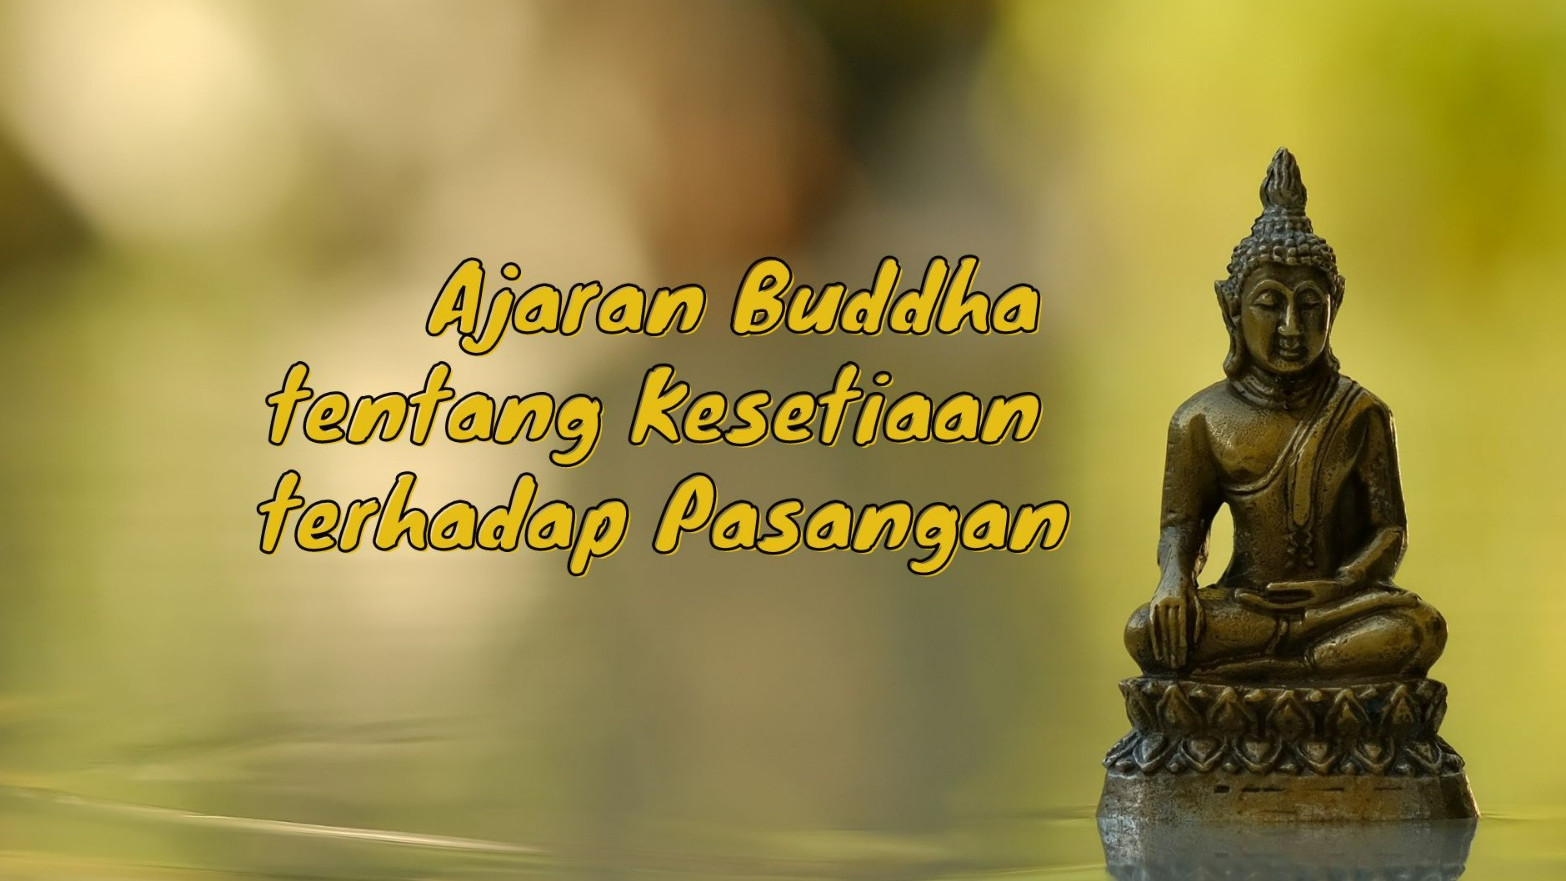 Buddha Wacana